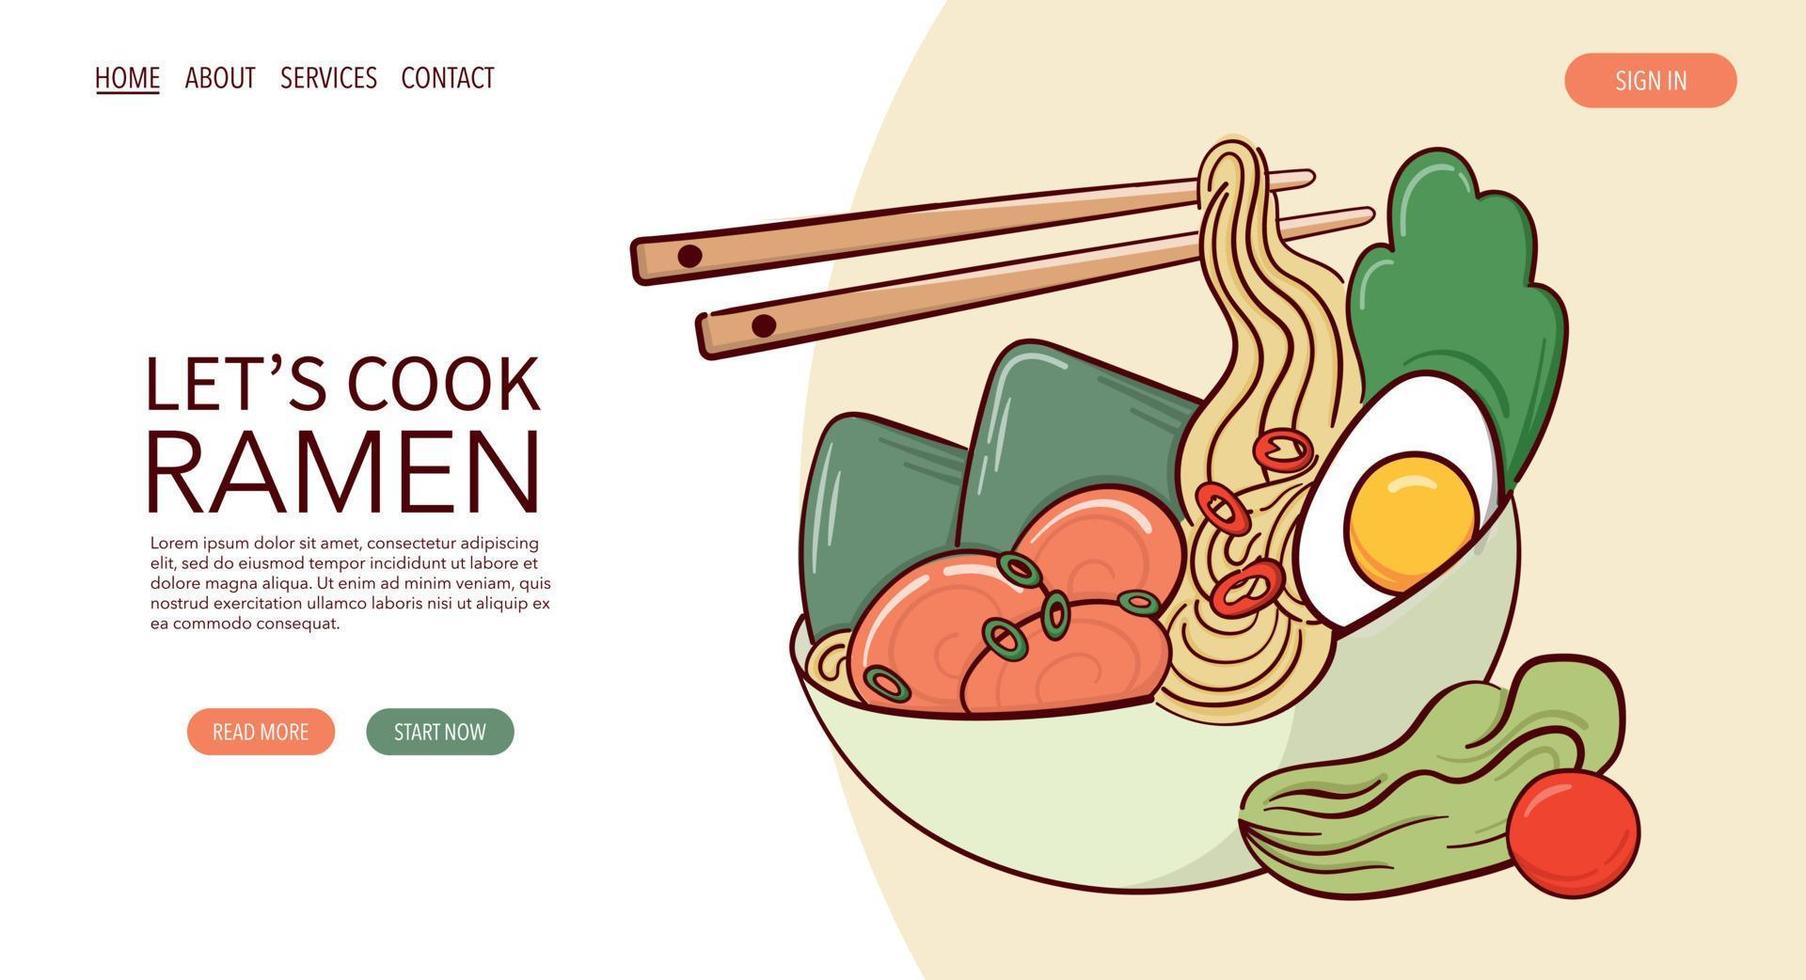 Webseite zeichnen Ramen-Suppe in einer Schüssel-Vektor-Illustration. japanisches asiatisches traditionelles essen, kochen, menükonzept. Banner, Website, Werbung im Doodle-Cartoon-Stil.. vektor